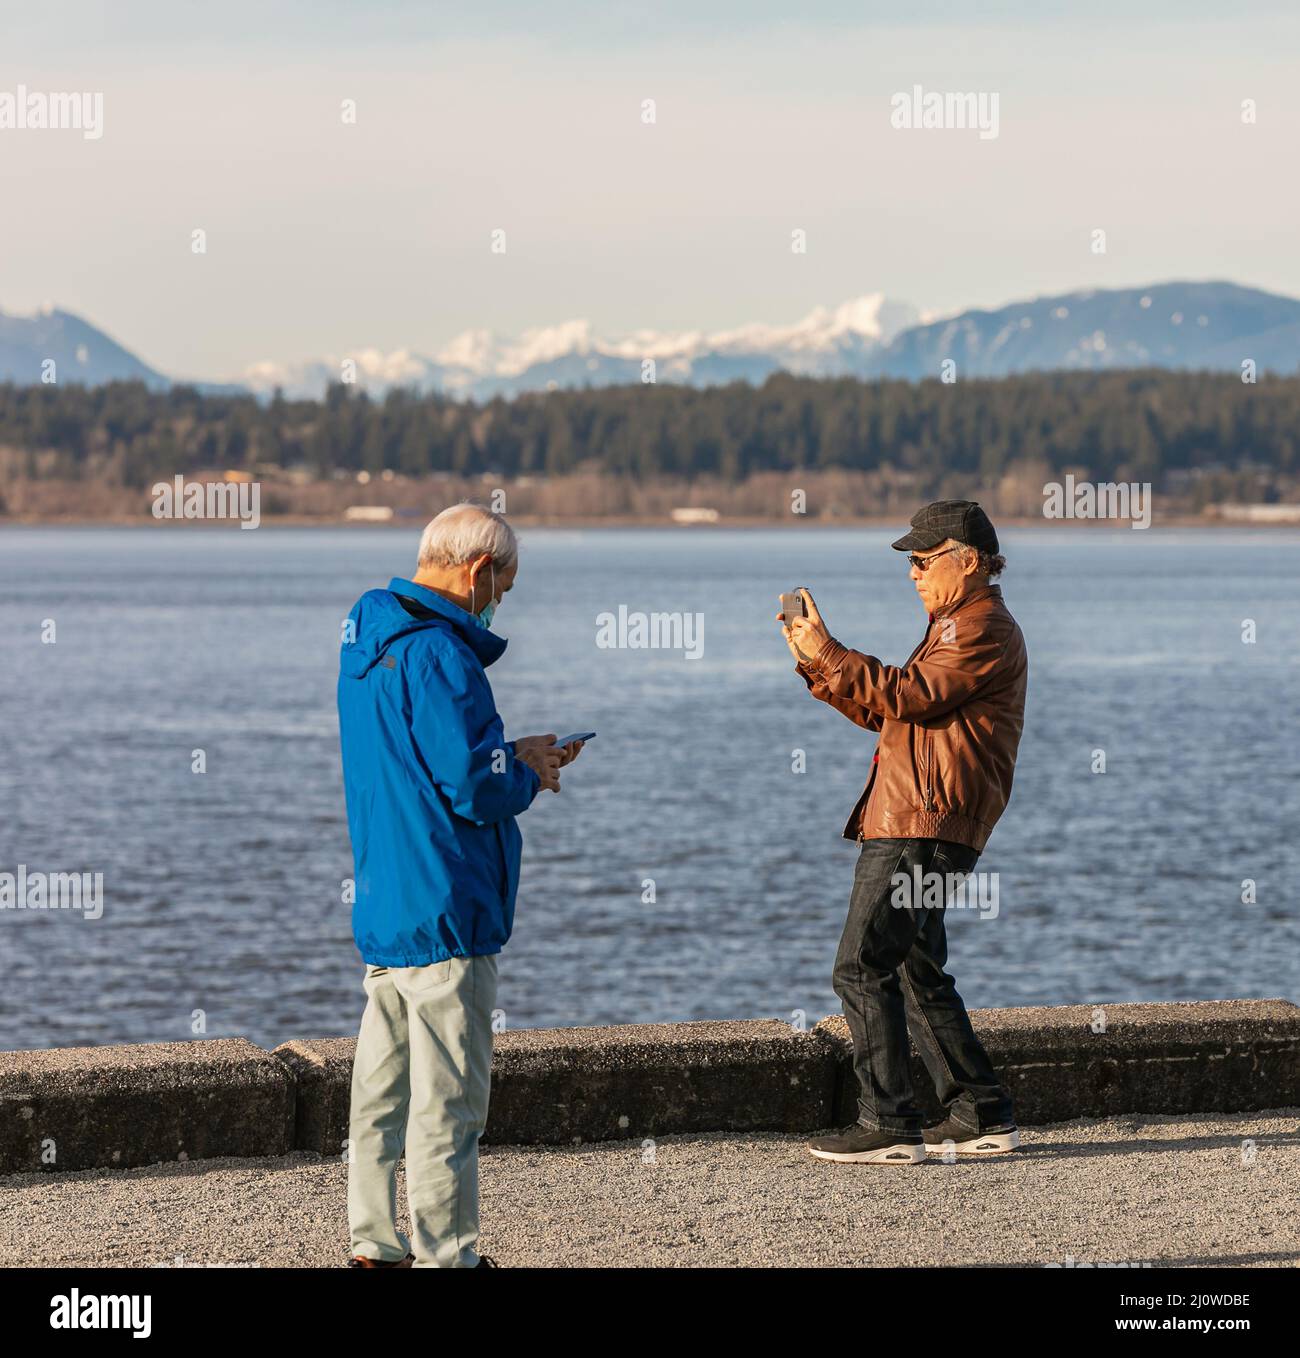 Asiatischer älterer Mann mit einem Smartphone. Ein Mann, der mit seinem Handy im Park Fotos machte. Stockfoto